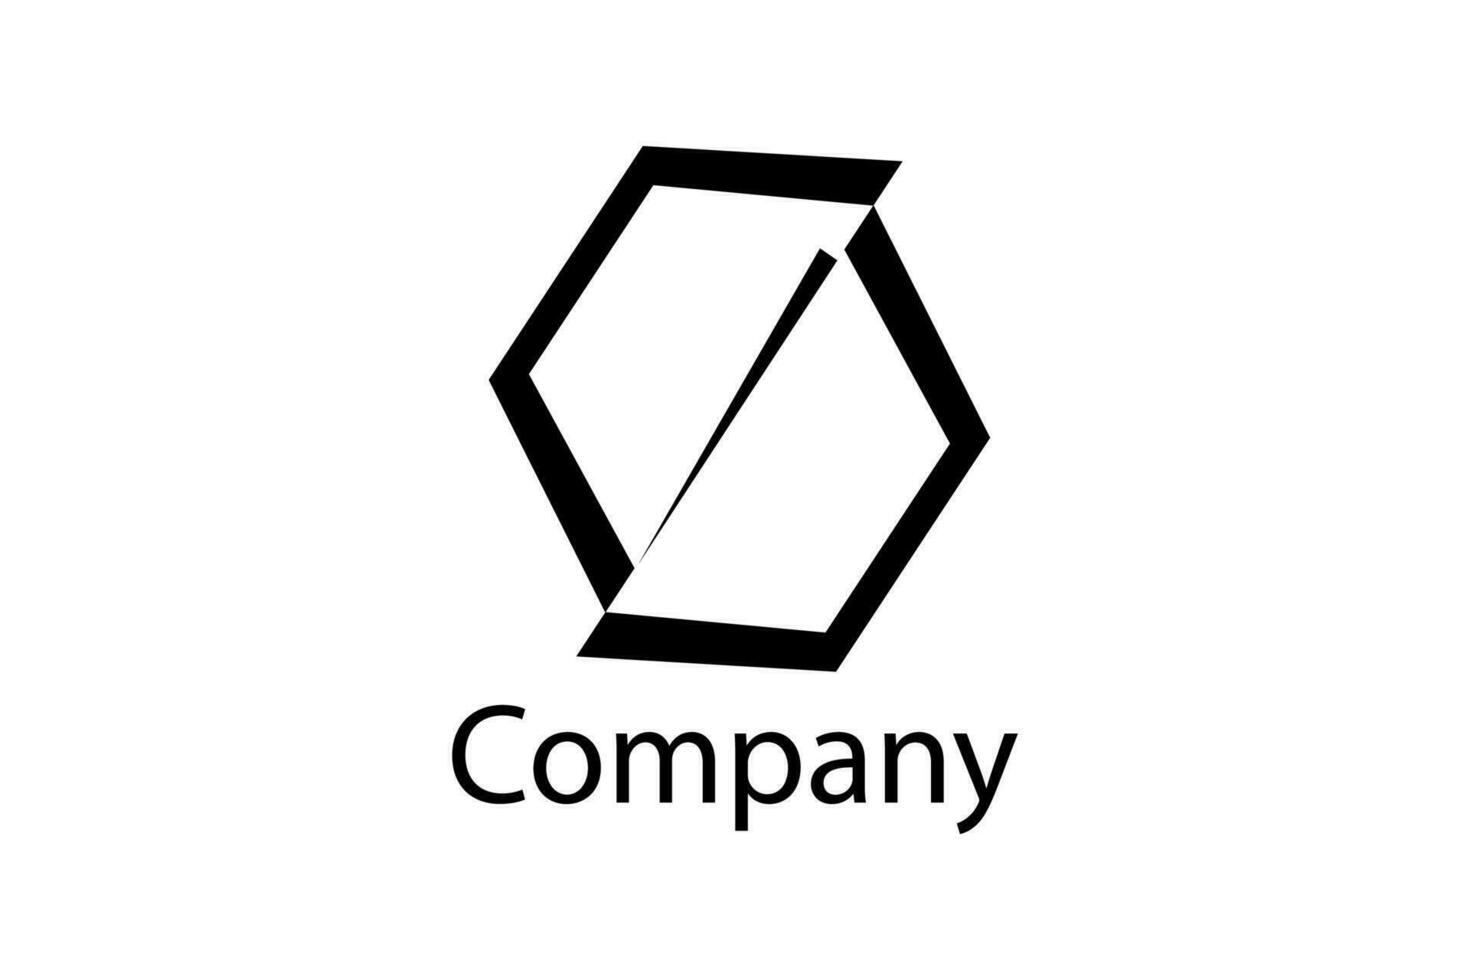 einzigartiges Logo-Design vektor